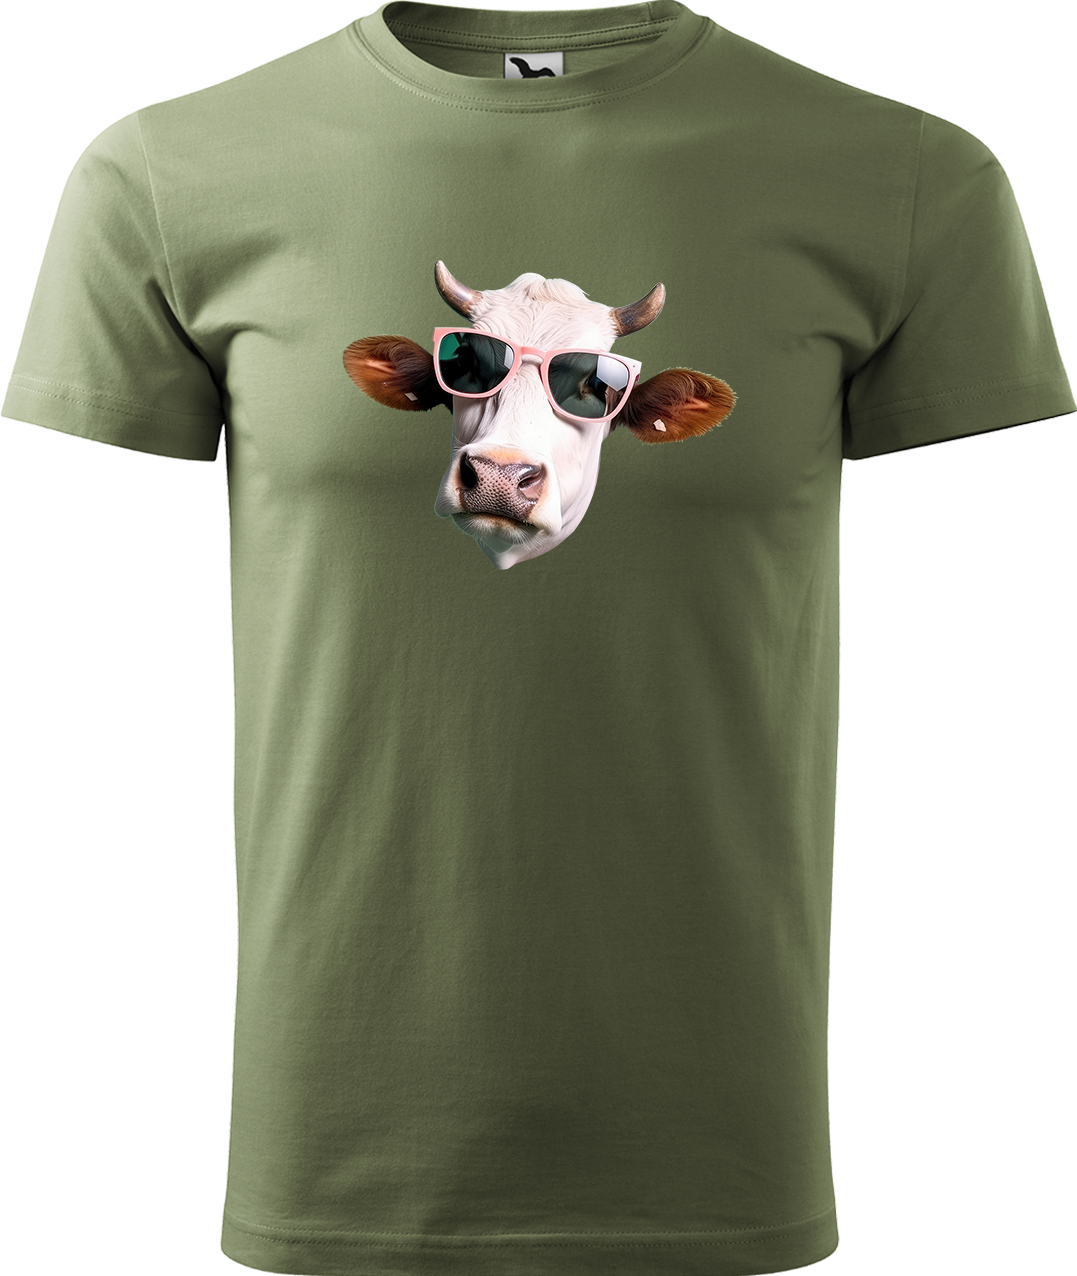 Pánské tričko s krávou - Kráva v brýlích Velikost: M, Barva: Světlá khaki (28), Střih: pánský